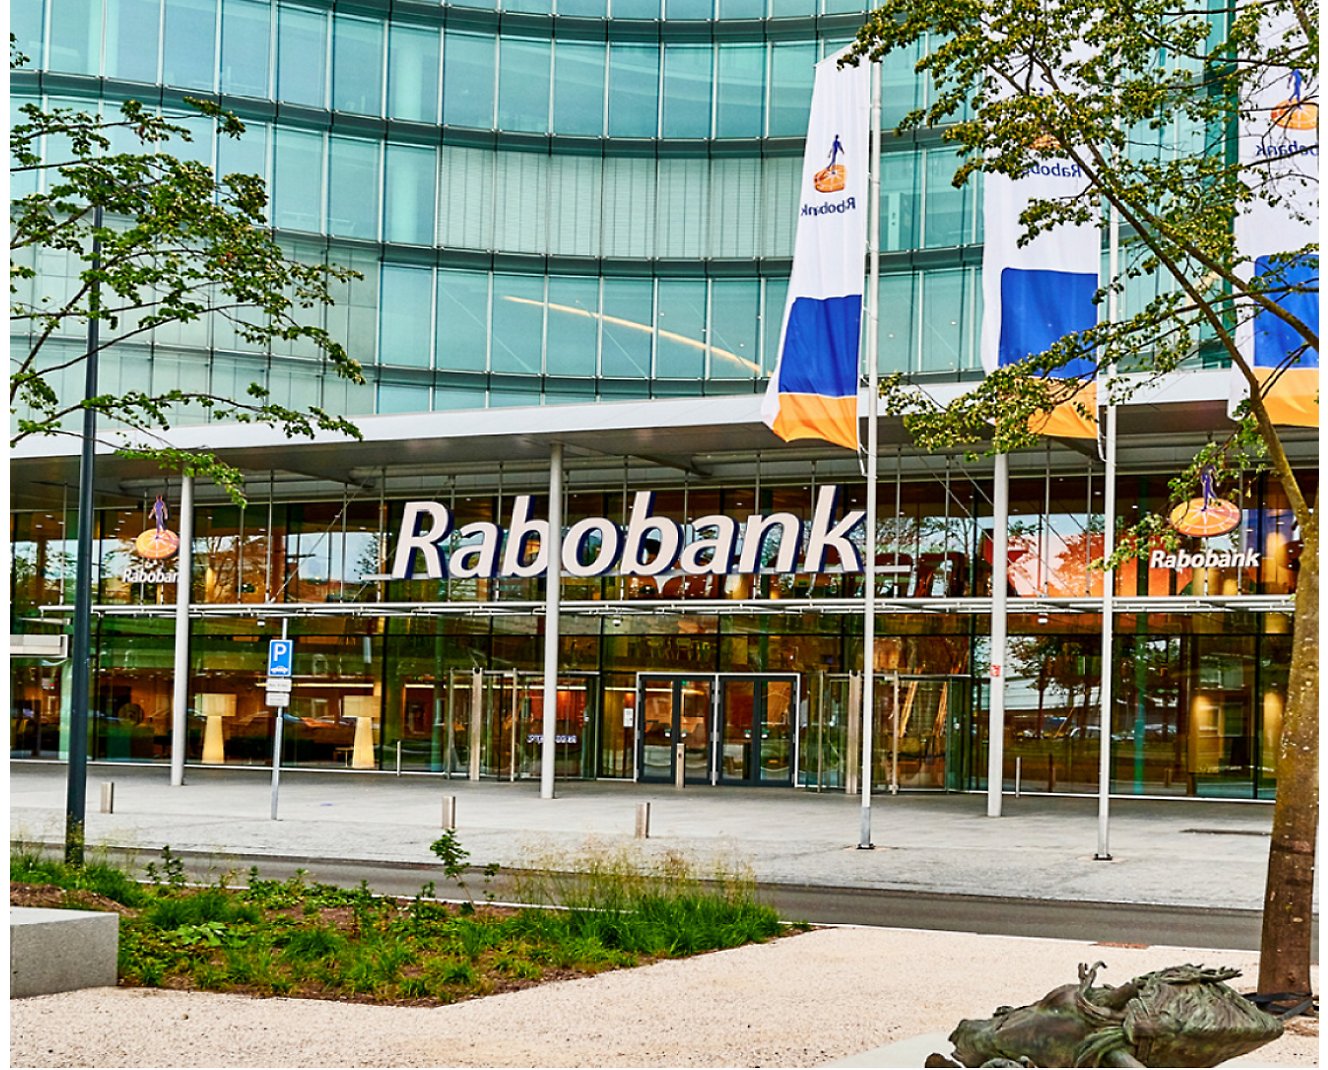 Bâtiment avec un signe indiquant Rabobank.